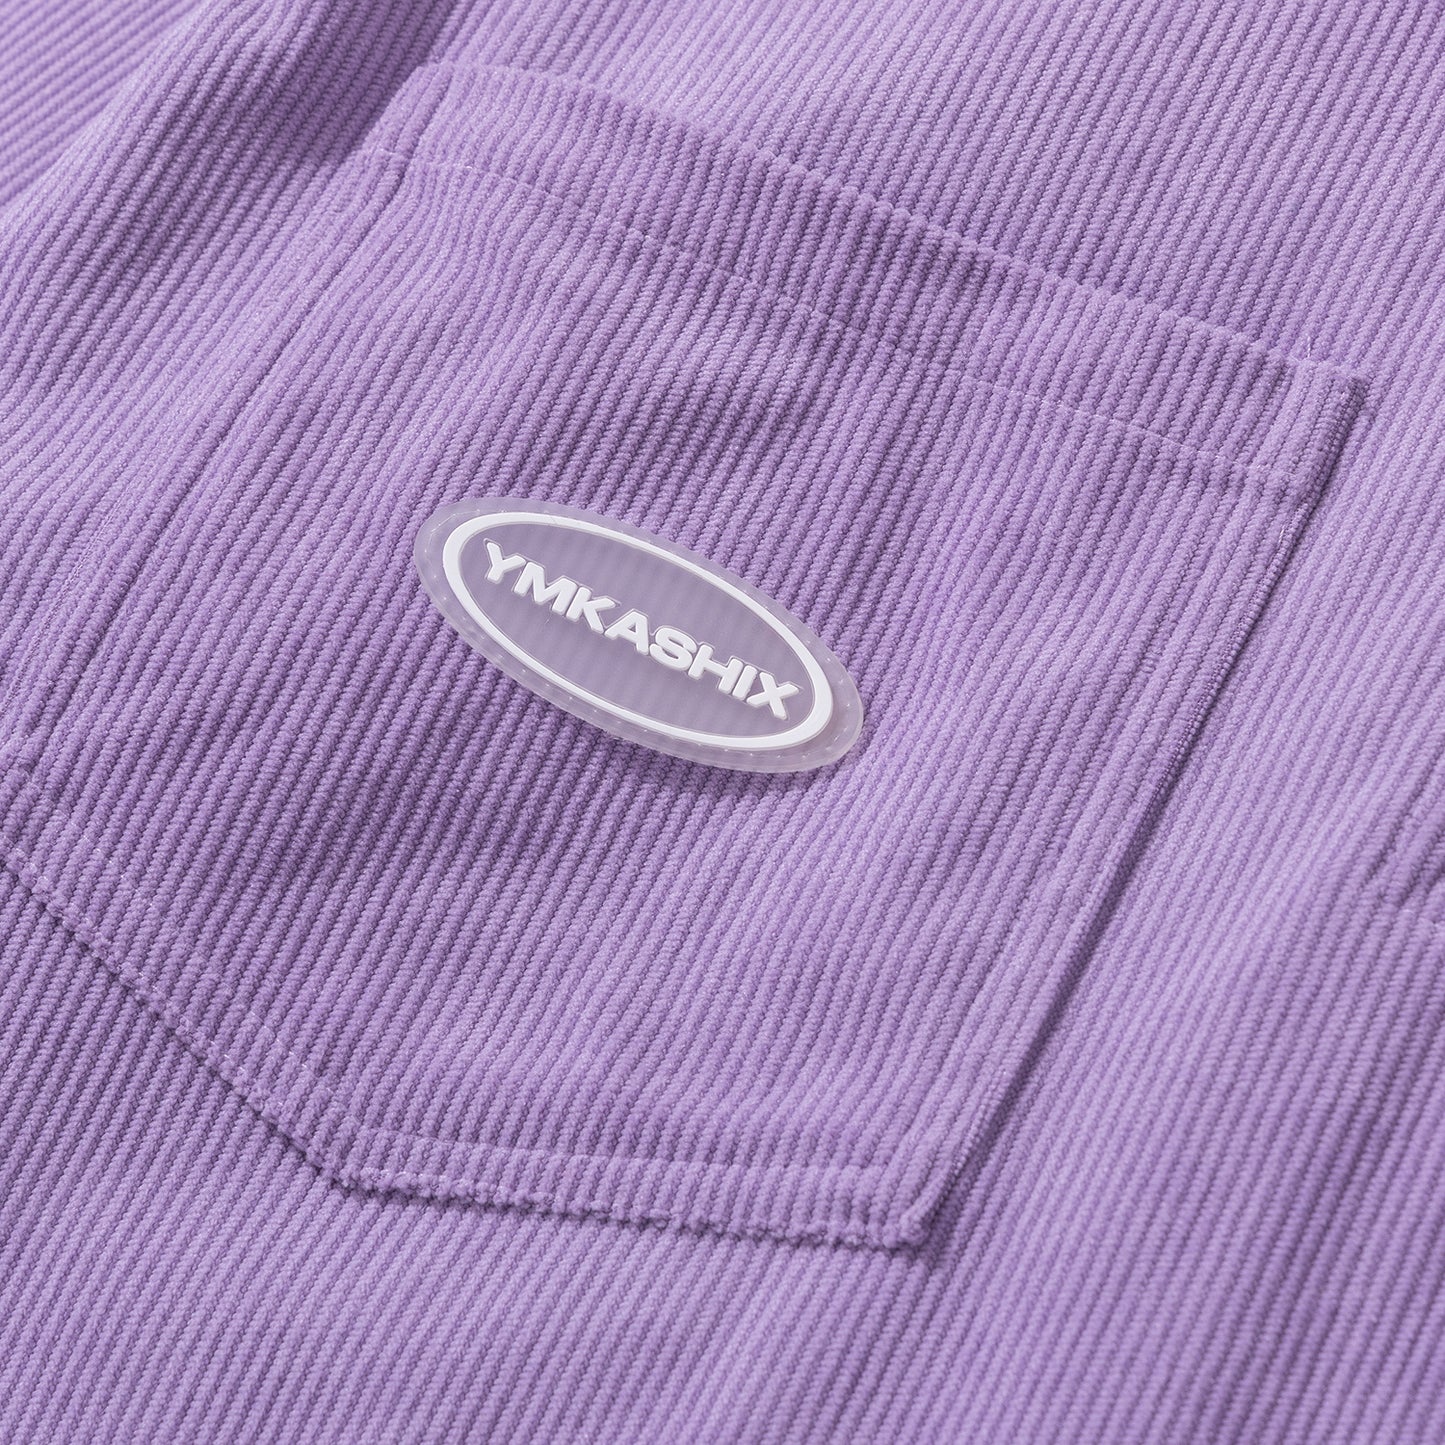 Shirt Velvet Series, purple